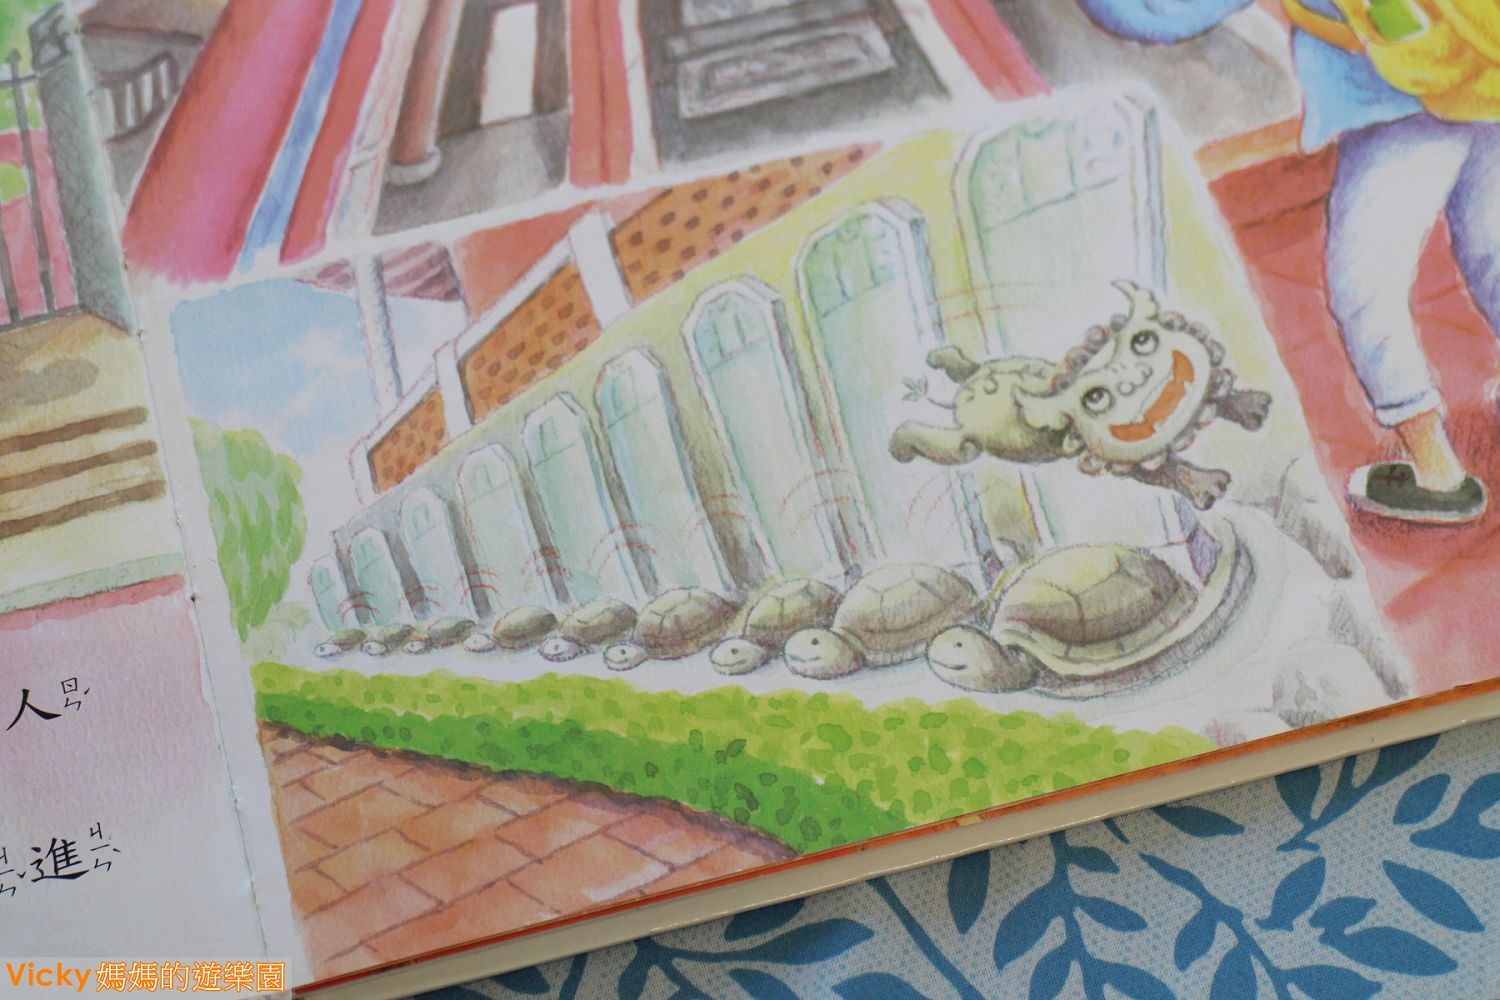 親子共讀︱台南旅遊繪本：小石獅遊府城，兒童專屬旅遊書，一起逛遍古蹟、嘗遍美食